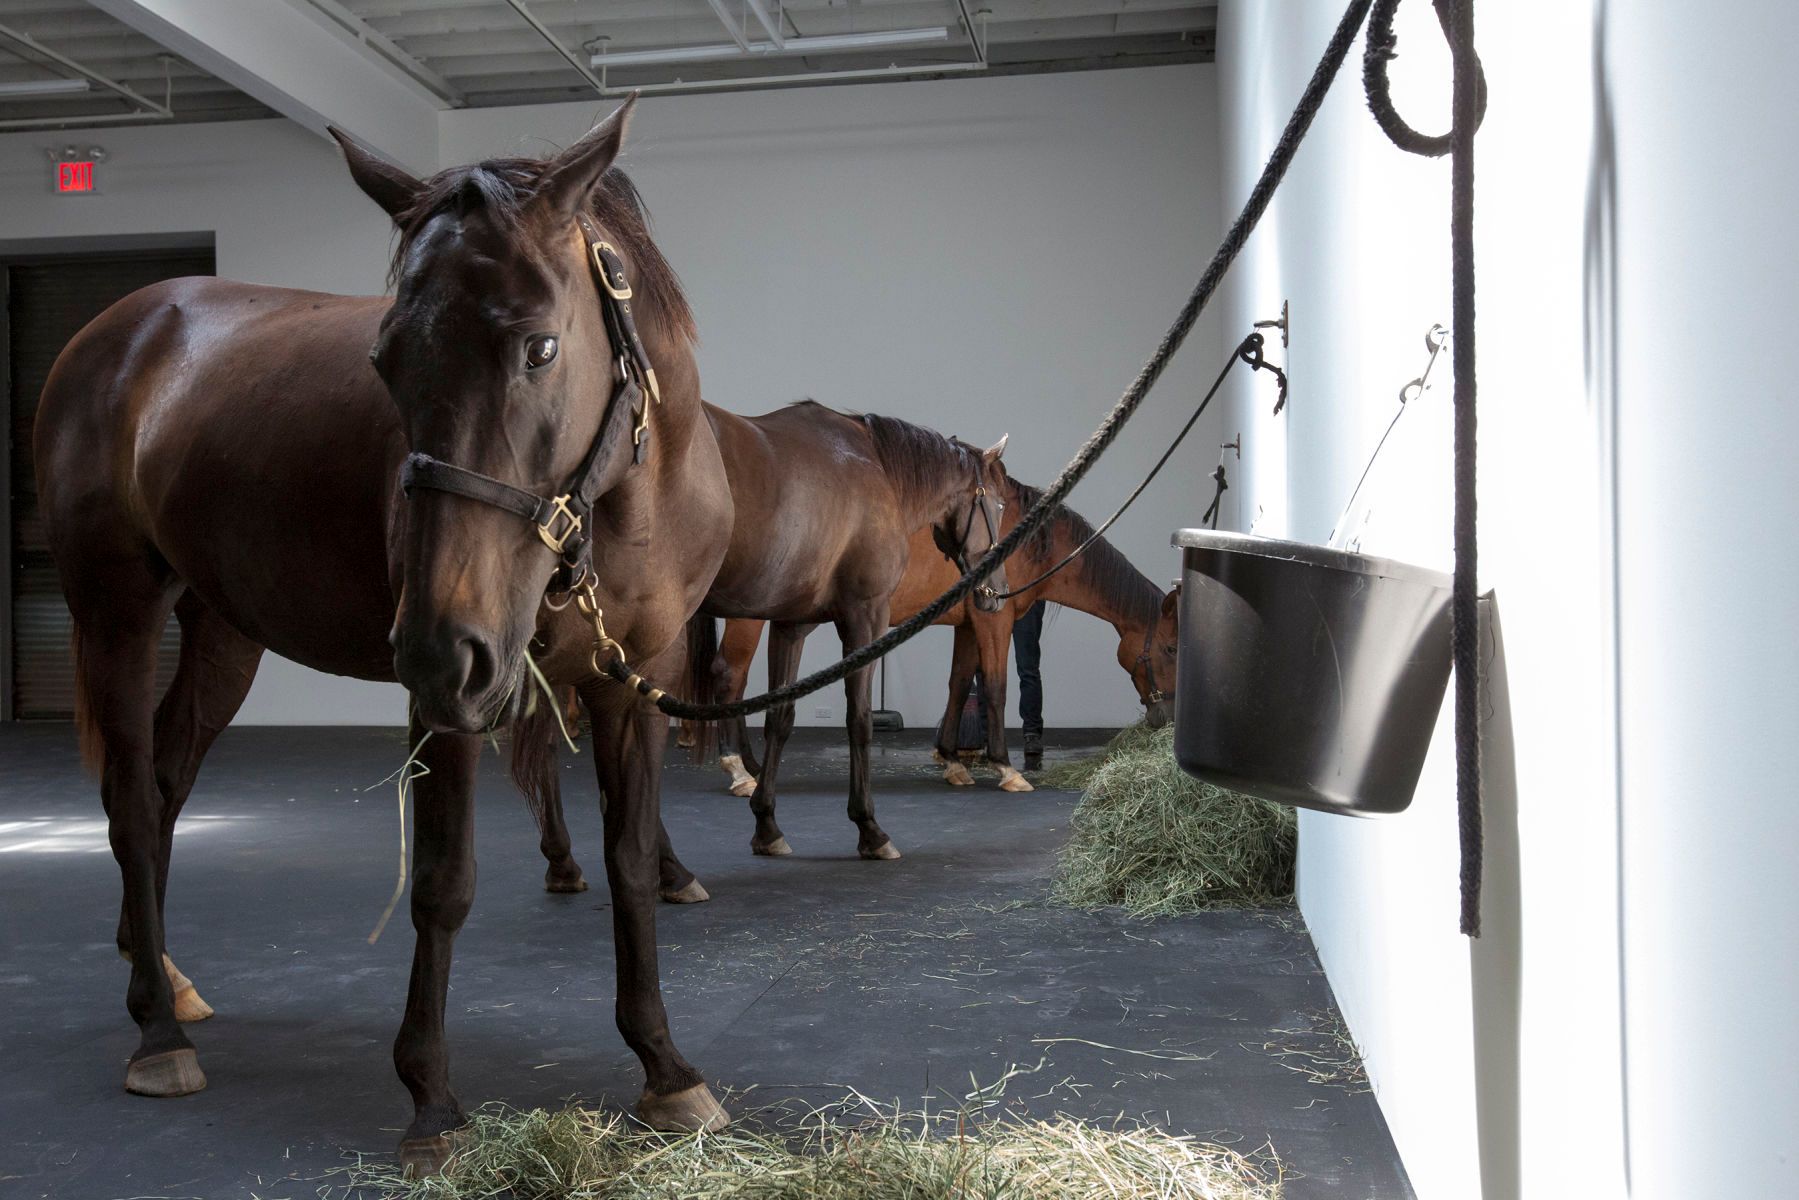 12 horses, Jannis Kounellis, detail